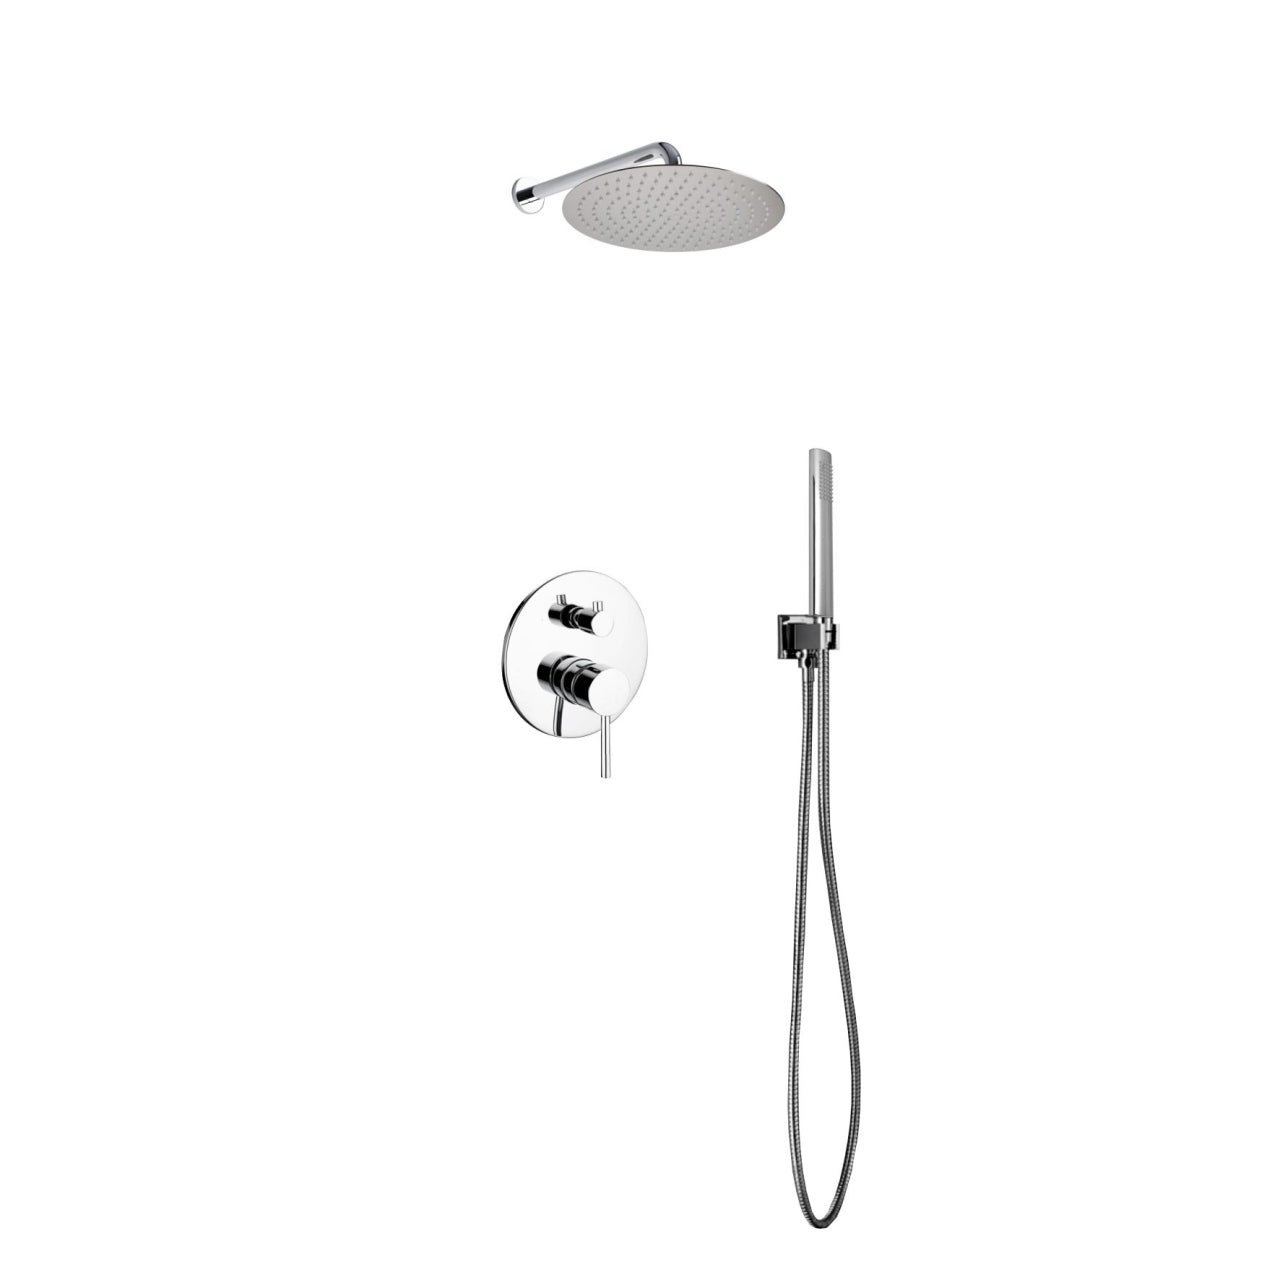 Kube Bath Aqua Rondo Shower Set With 12" Rain Shower and Handheld Chrome